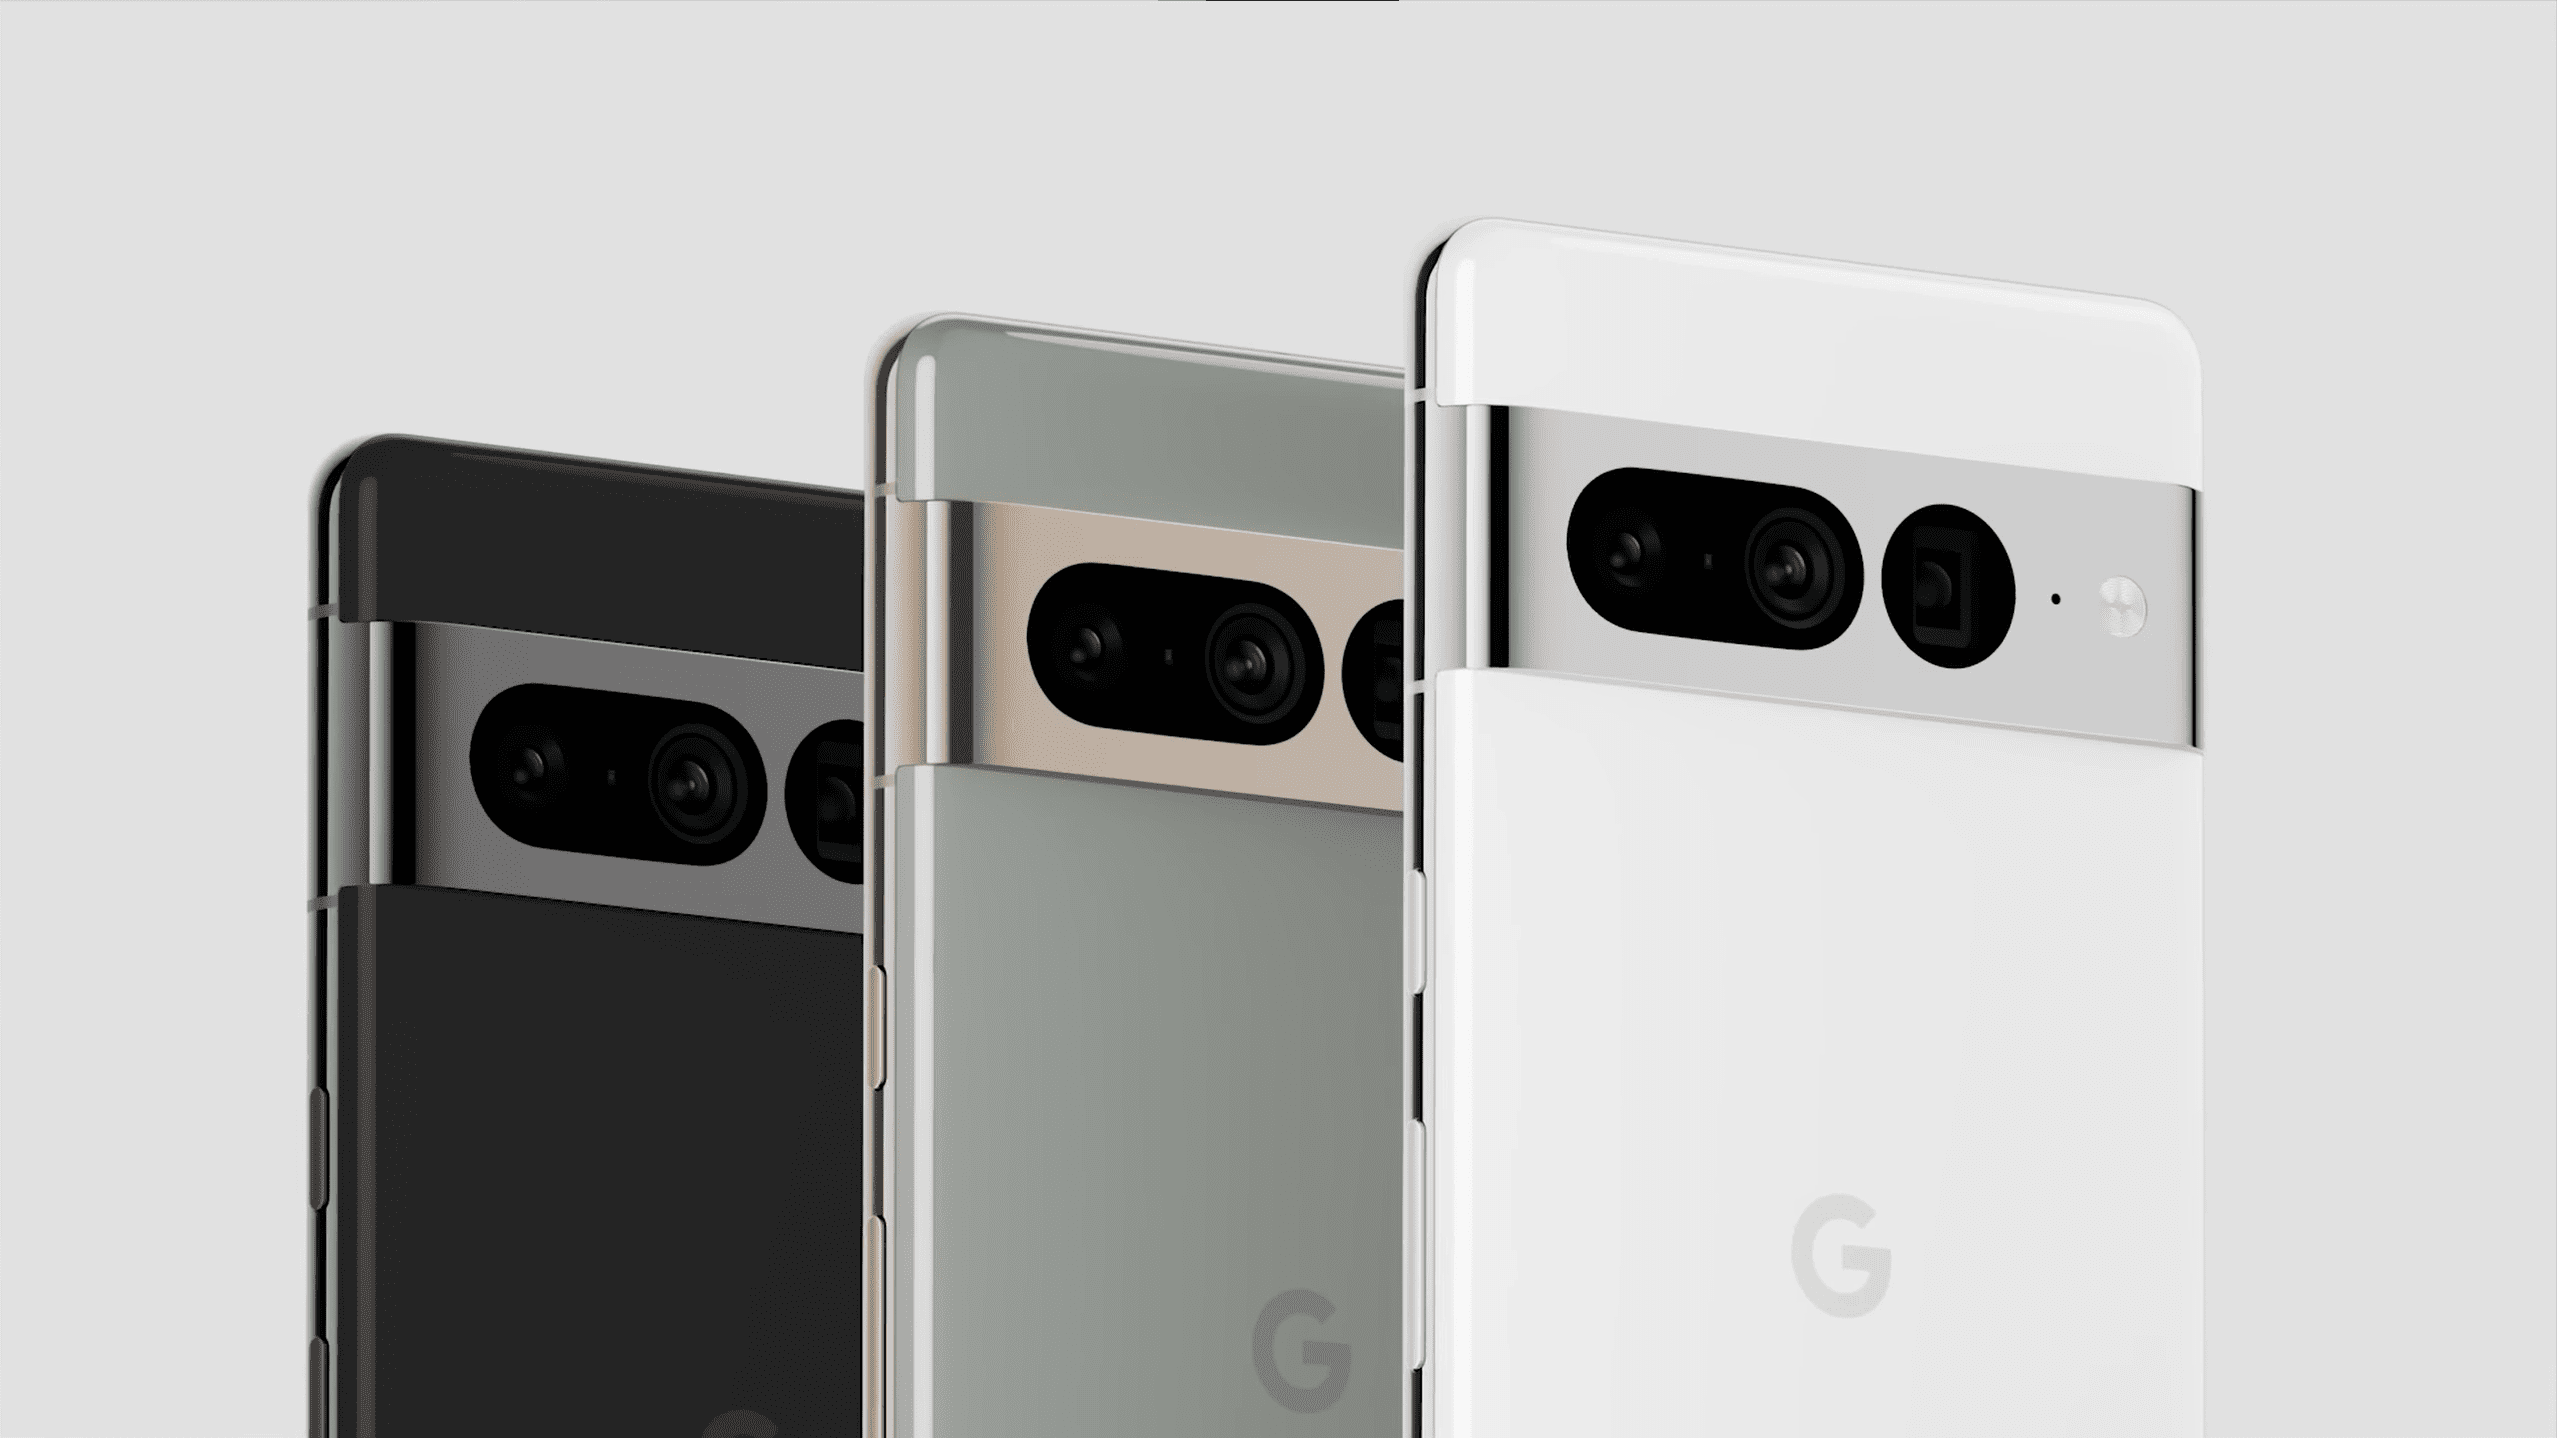 Render resmi Google Pixel 7 Pro, ditampilkan tiga kali dalam warna hitam, putih, dan hijau